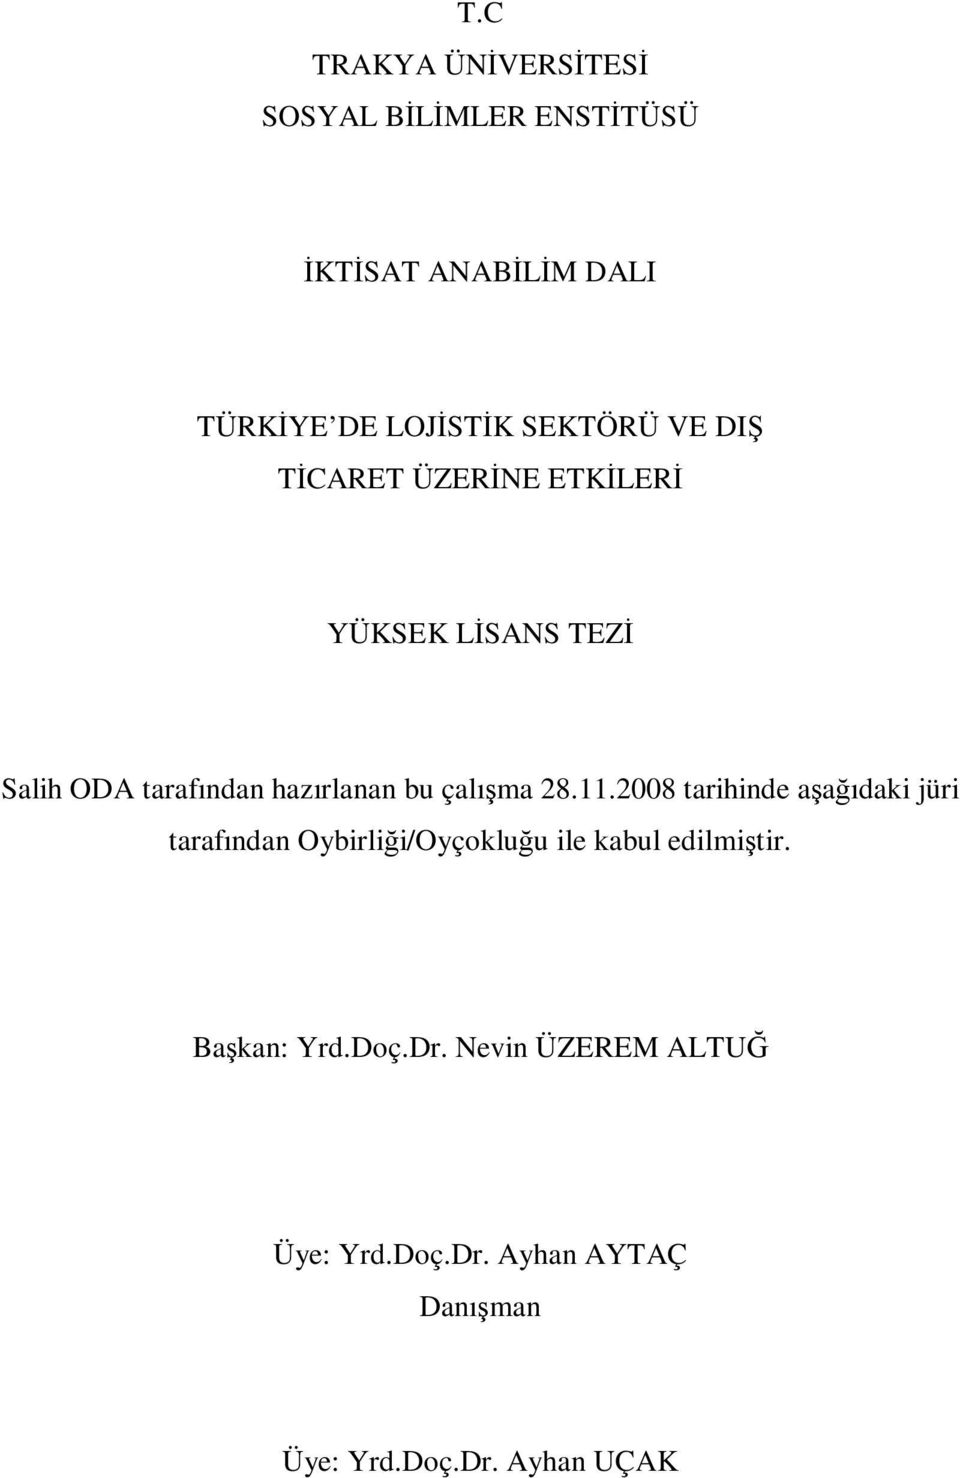 çalışma 28.11.2008 tarihinde aşağıdaki jüri tarafından Oybirliği/Oyçokluğu ile kabul edilmiştir.